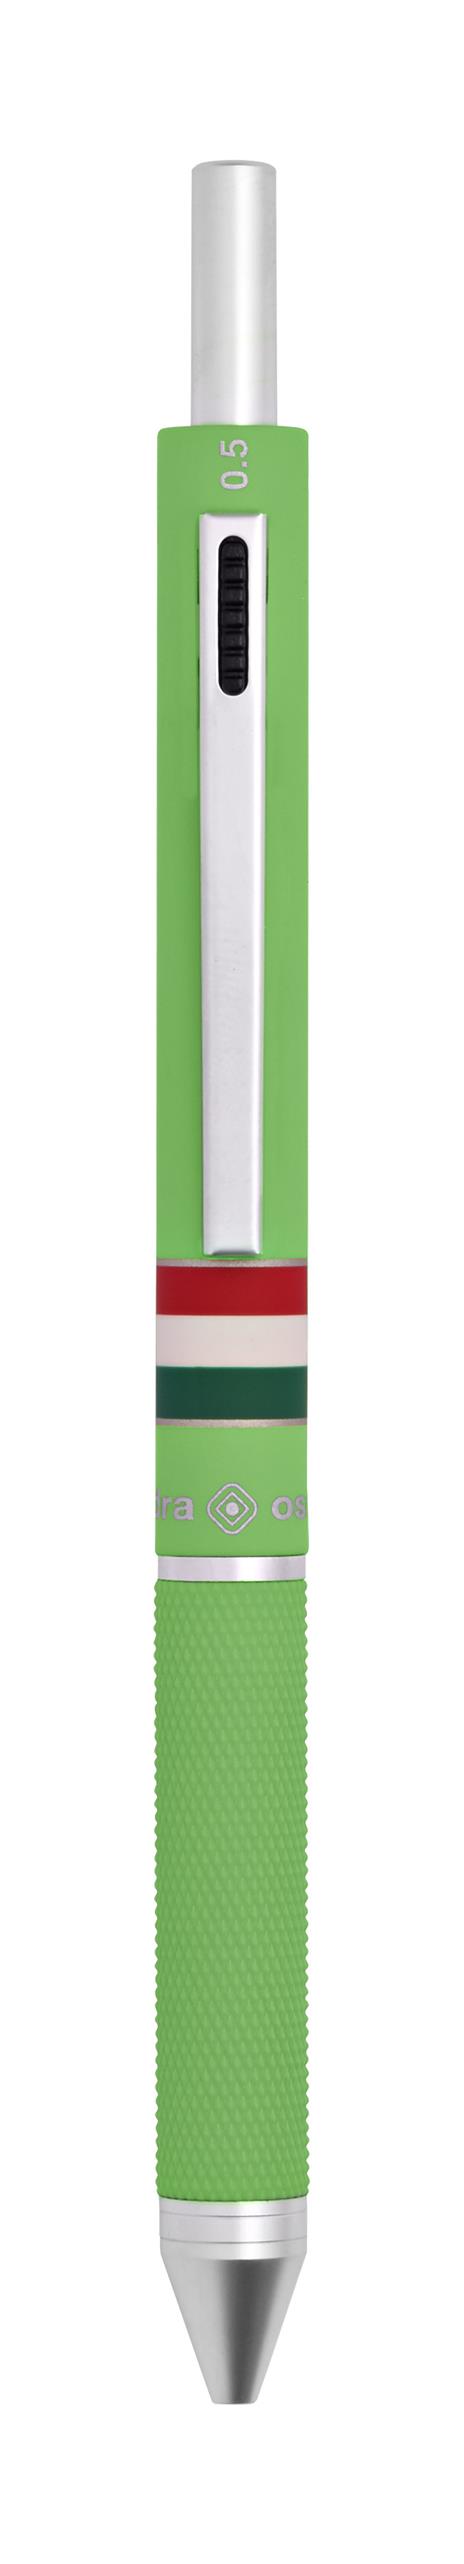 Penna a sfera 4 funzioni Quadra Italia Gommata Verde Chiaro - 6